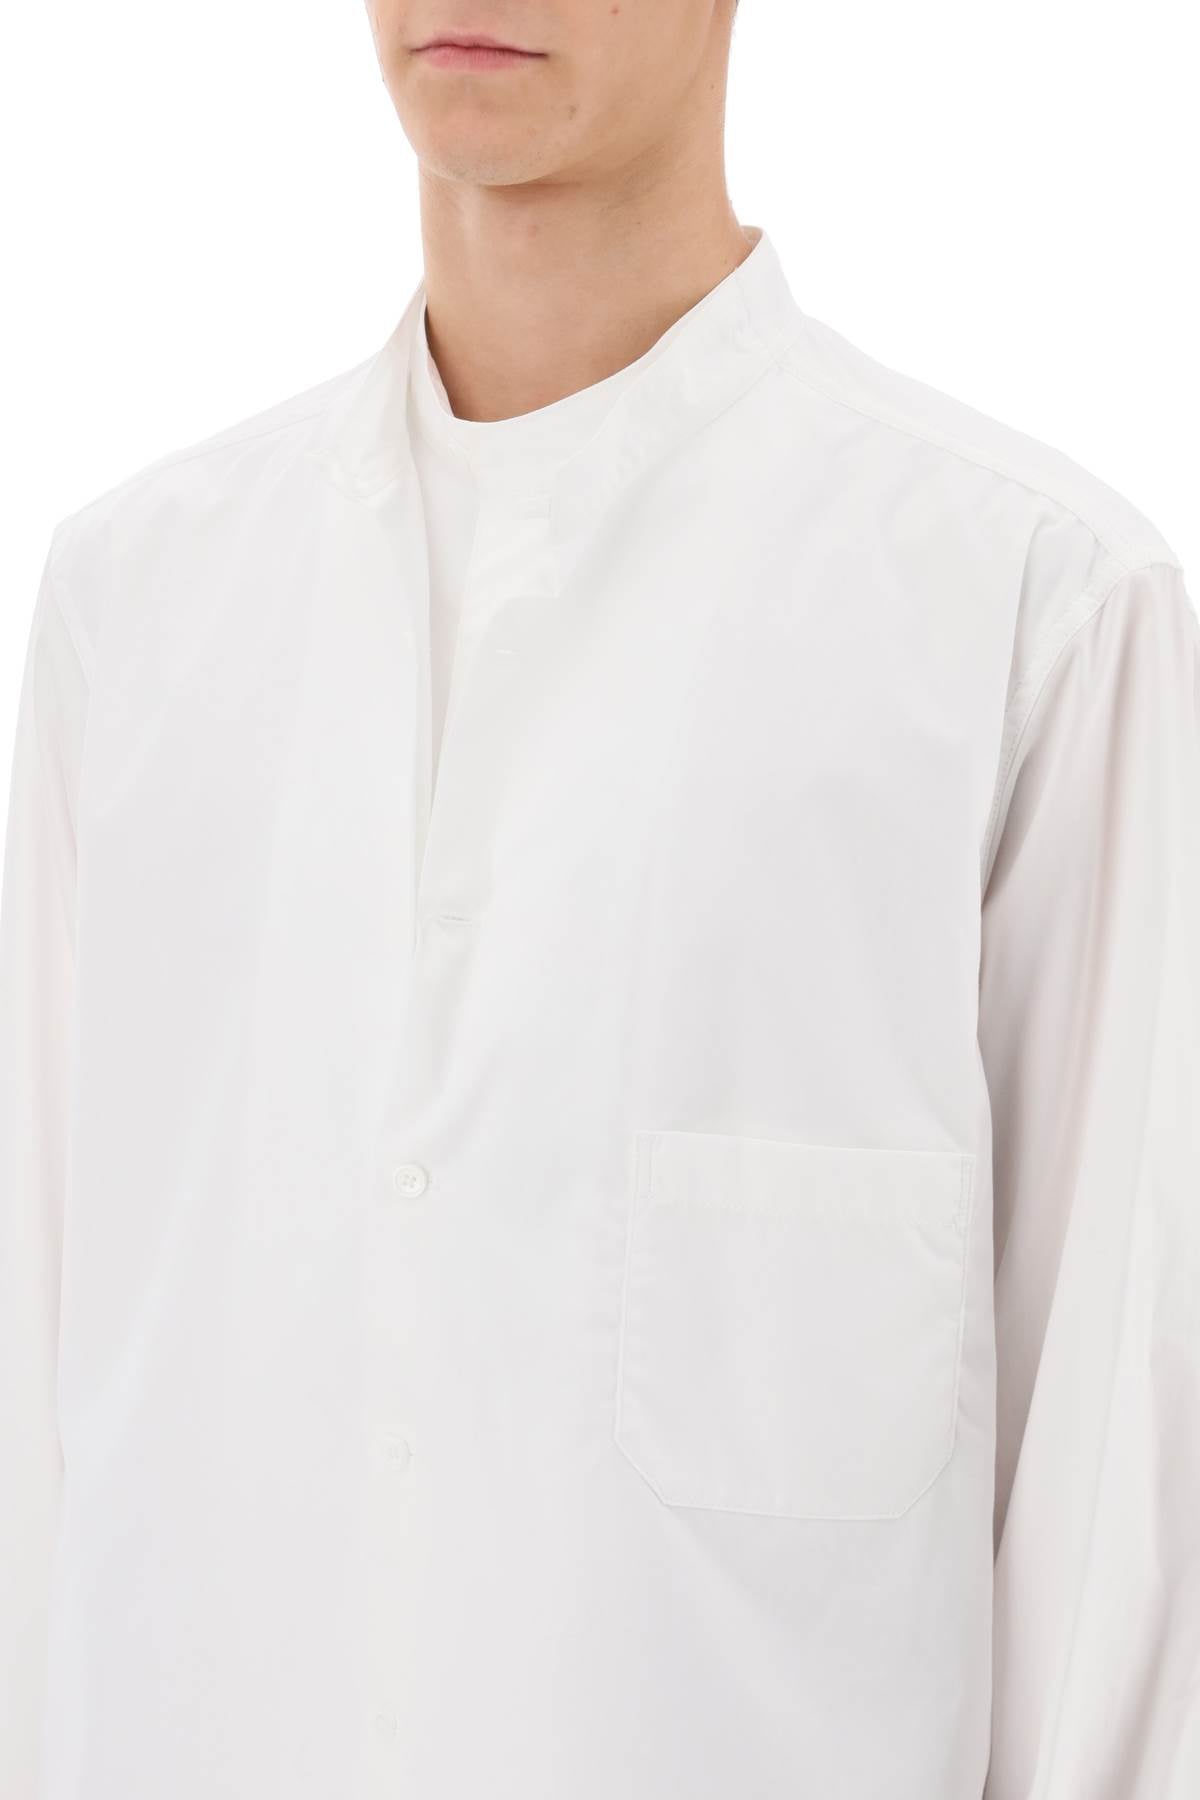 Yohji yamamoto layered longline shirt-3